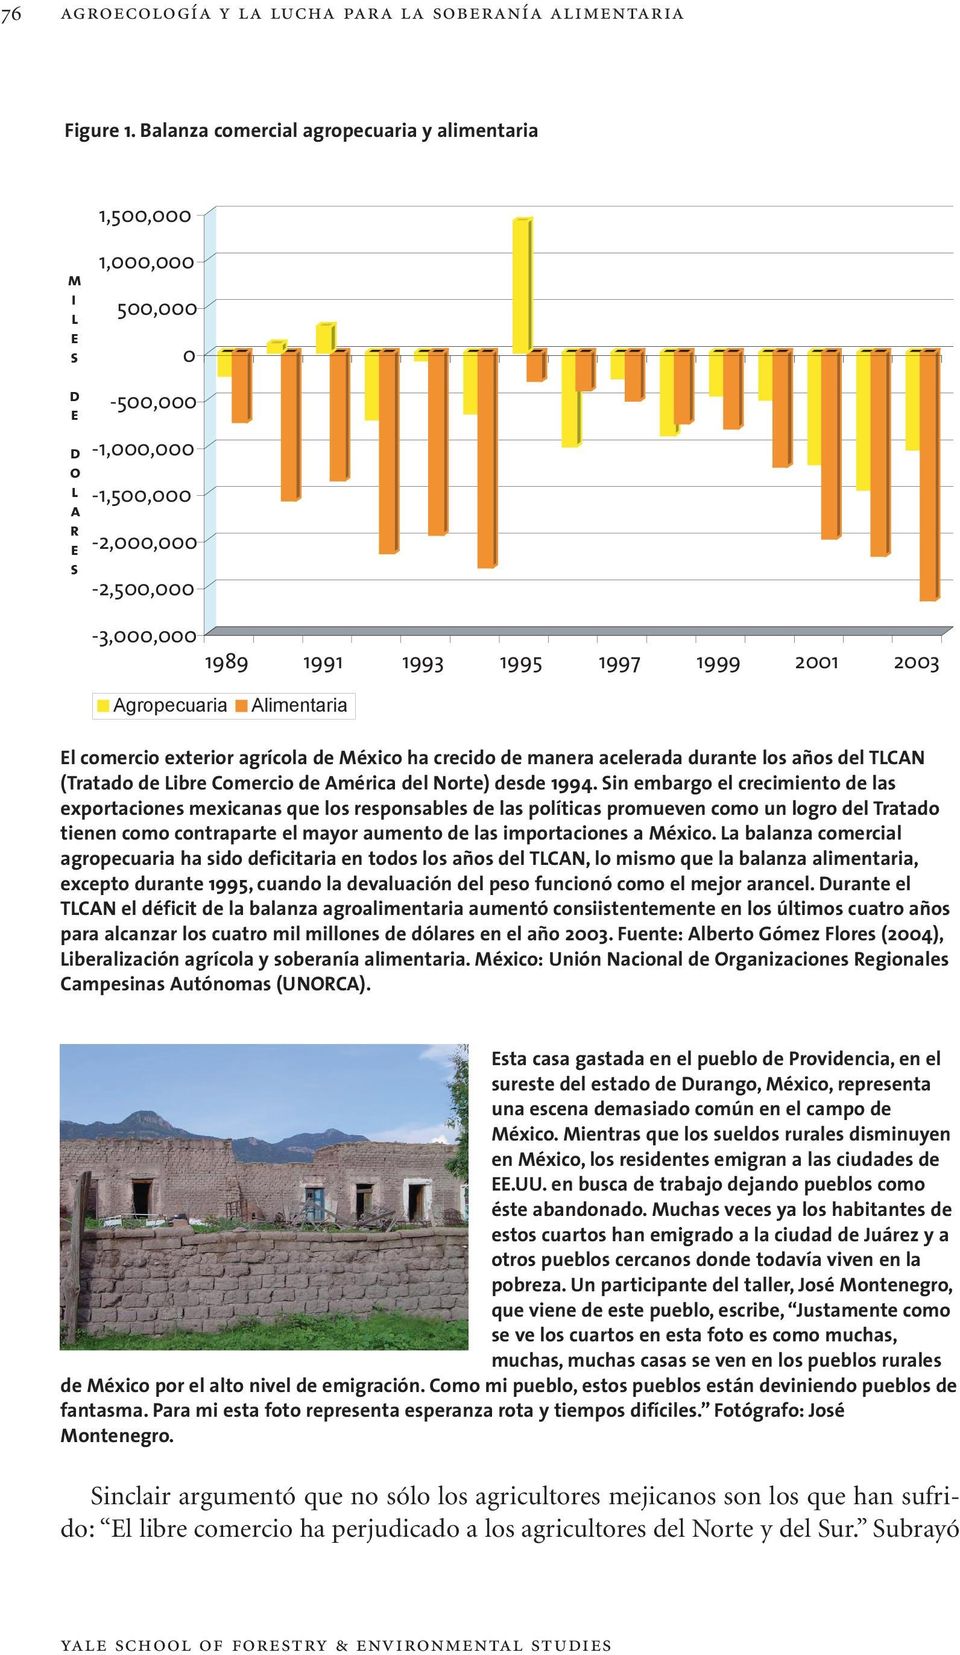 2003 Agropecuaria Alimentaria El comercio exterior agrícola de México ha crecido de manera acelerada durante los años del TLCAN (Tratado de Libre Comercio de América del Norte) desde 1994.